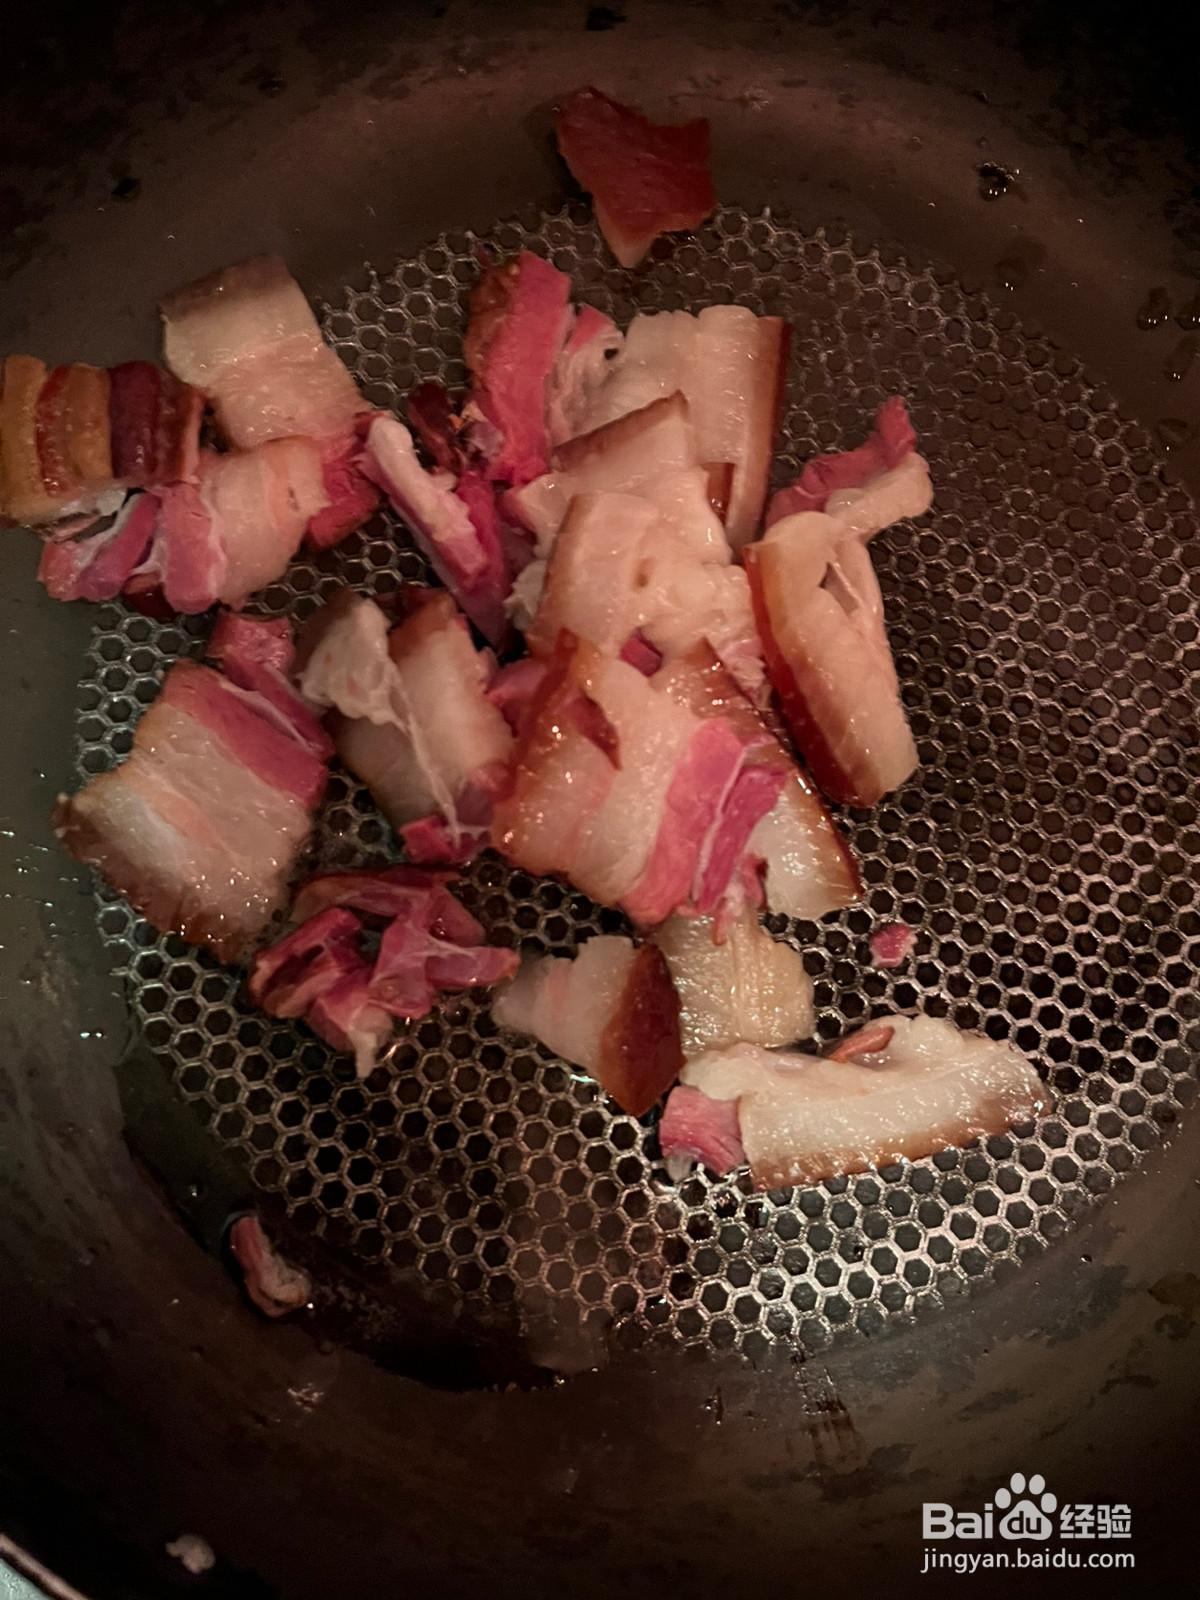 菜苔炒熏腊肉的做法